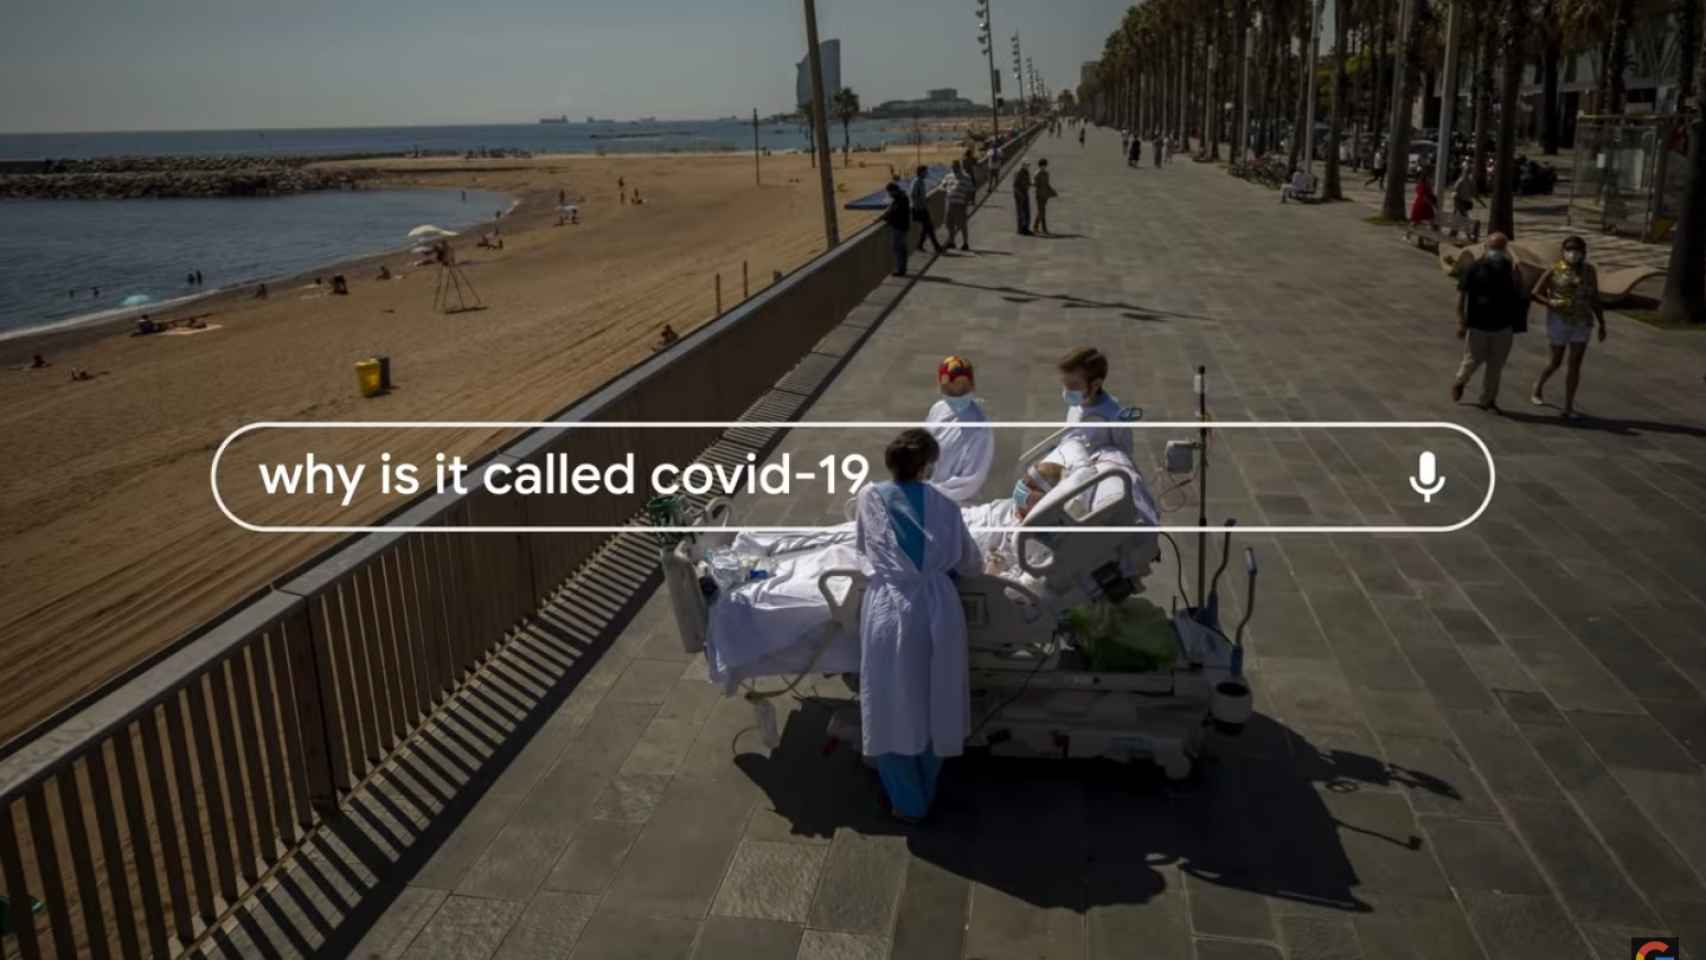 Imágenes de Barcelona en el vídeo resumen de Google de 2020